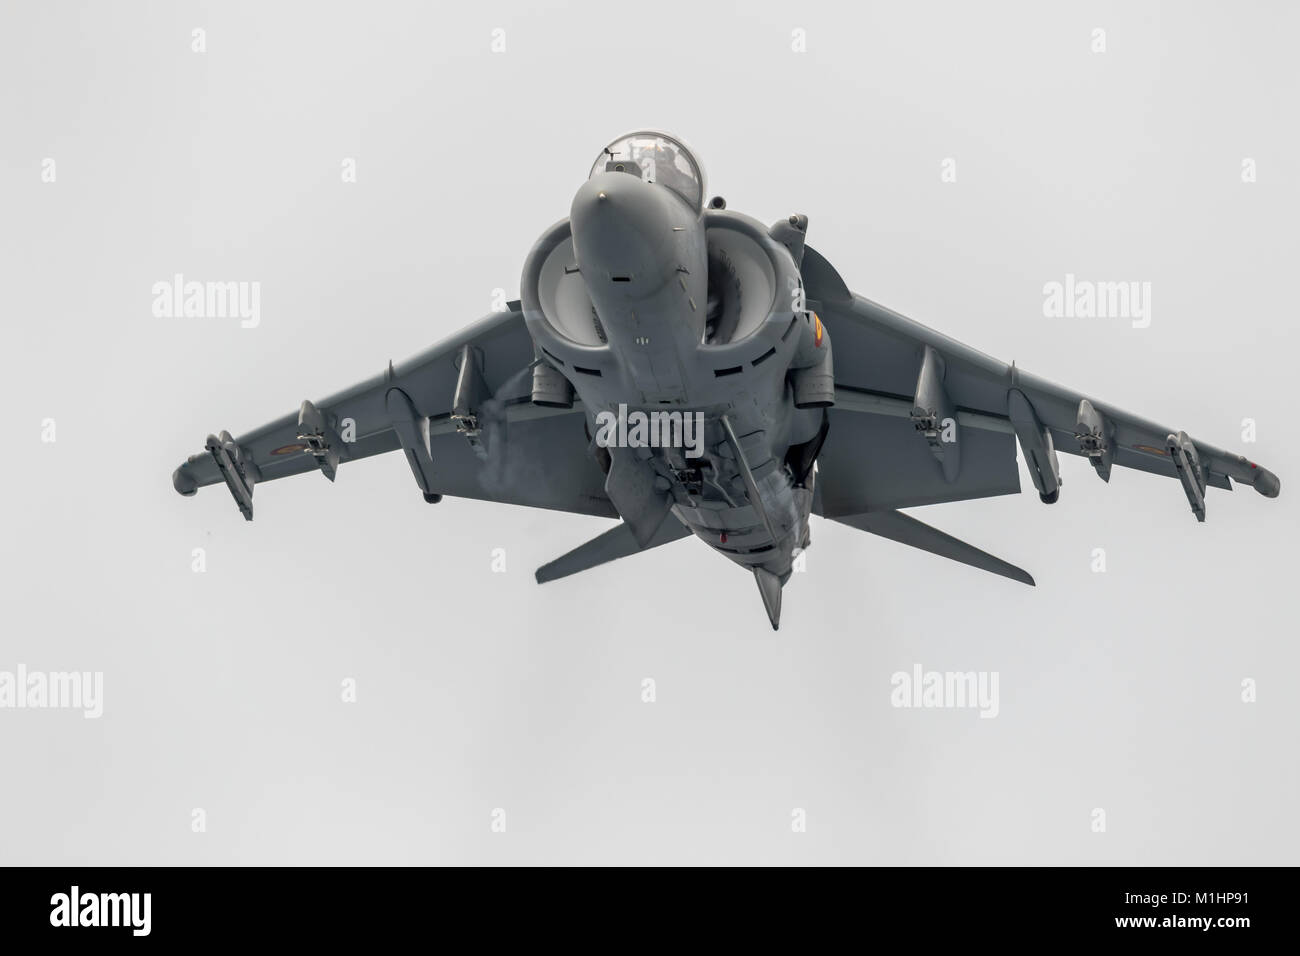 MOTRIL, Granada, SPAGNA-JUN 09: aerei AV-8B Harrier Plus prendendo parte a una mostra sul dodicesimo airshow internazionale di Motril giu 09, 2017, ho Foto Stock